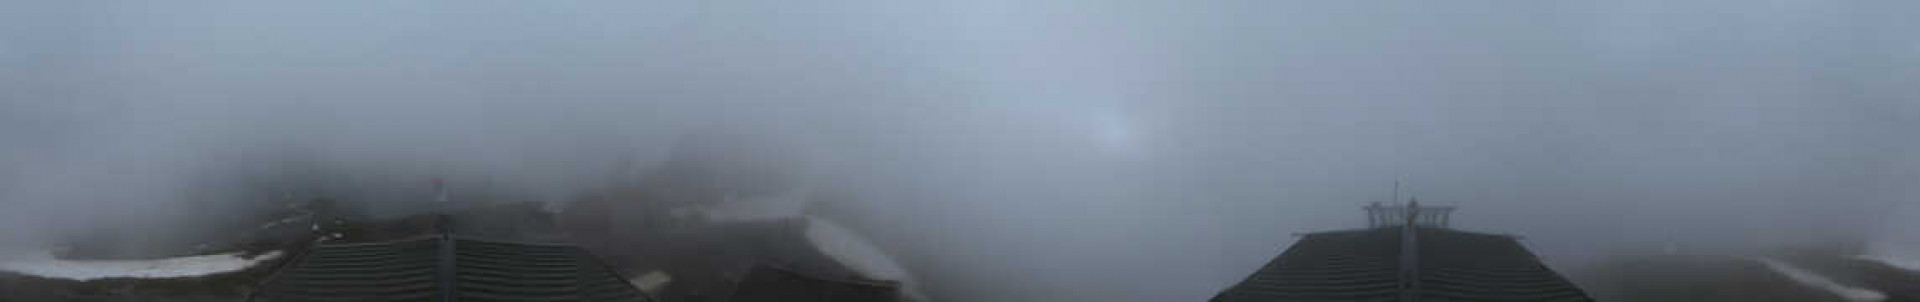 Webcam Le Grand-Bornand - Mont Lachat de Châtillon - 2100 m